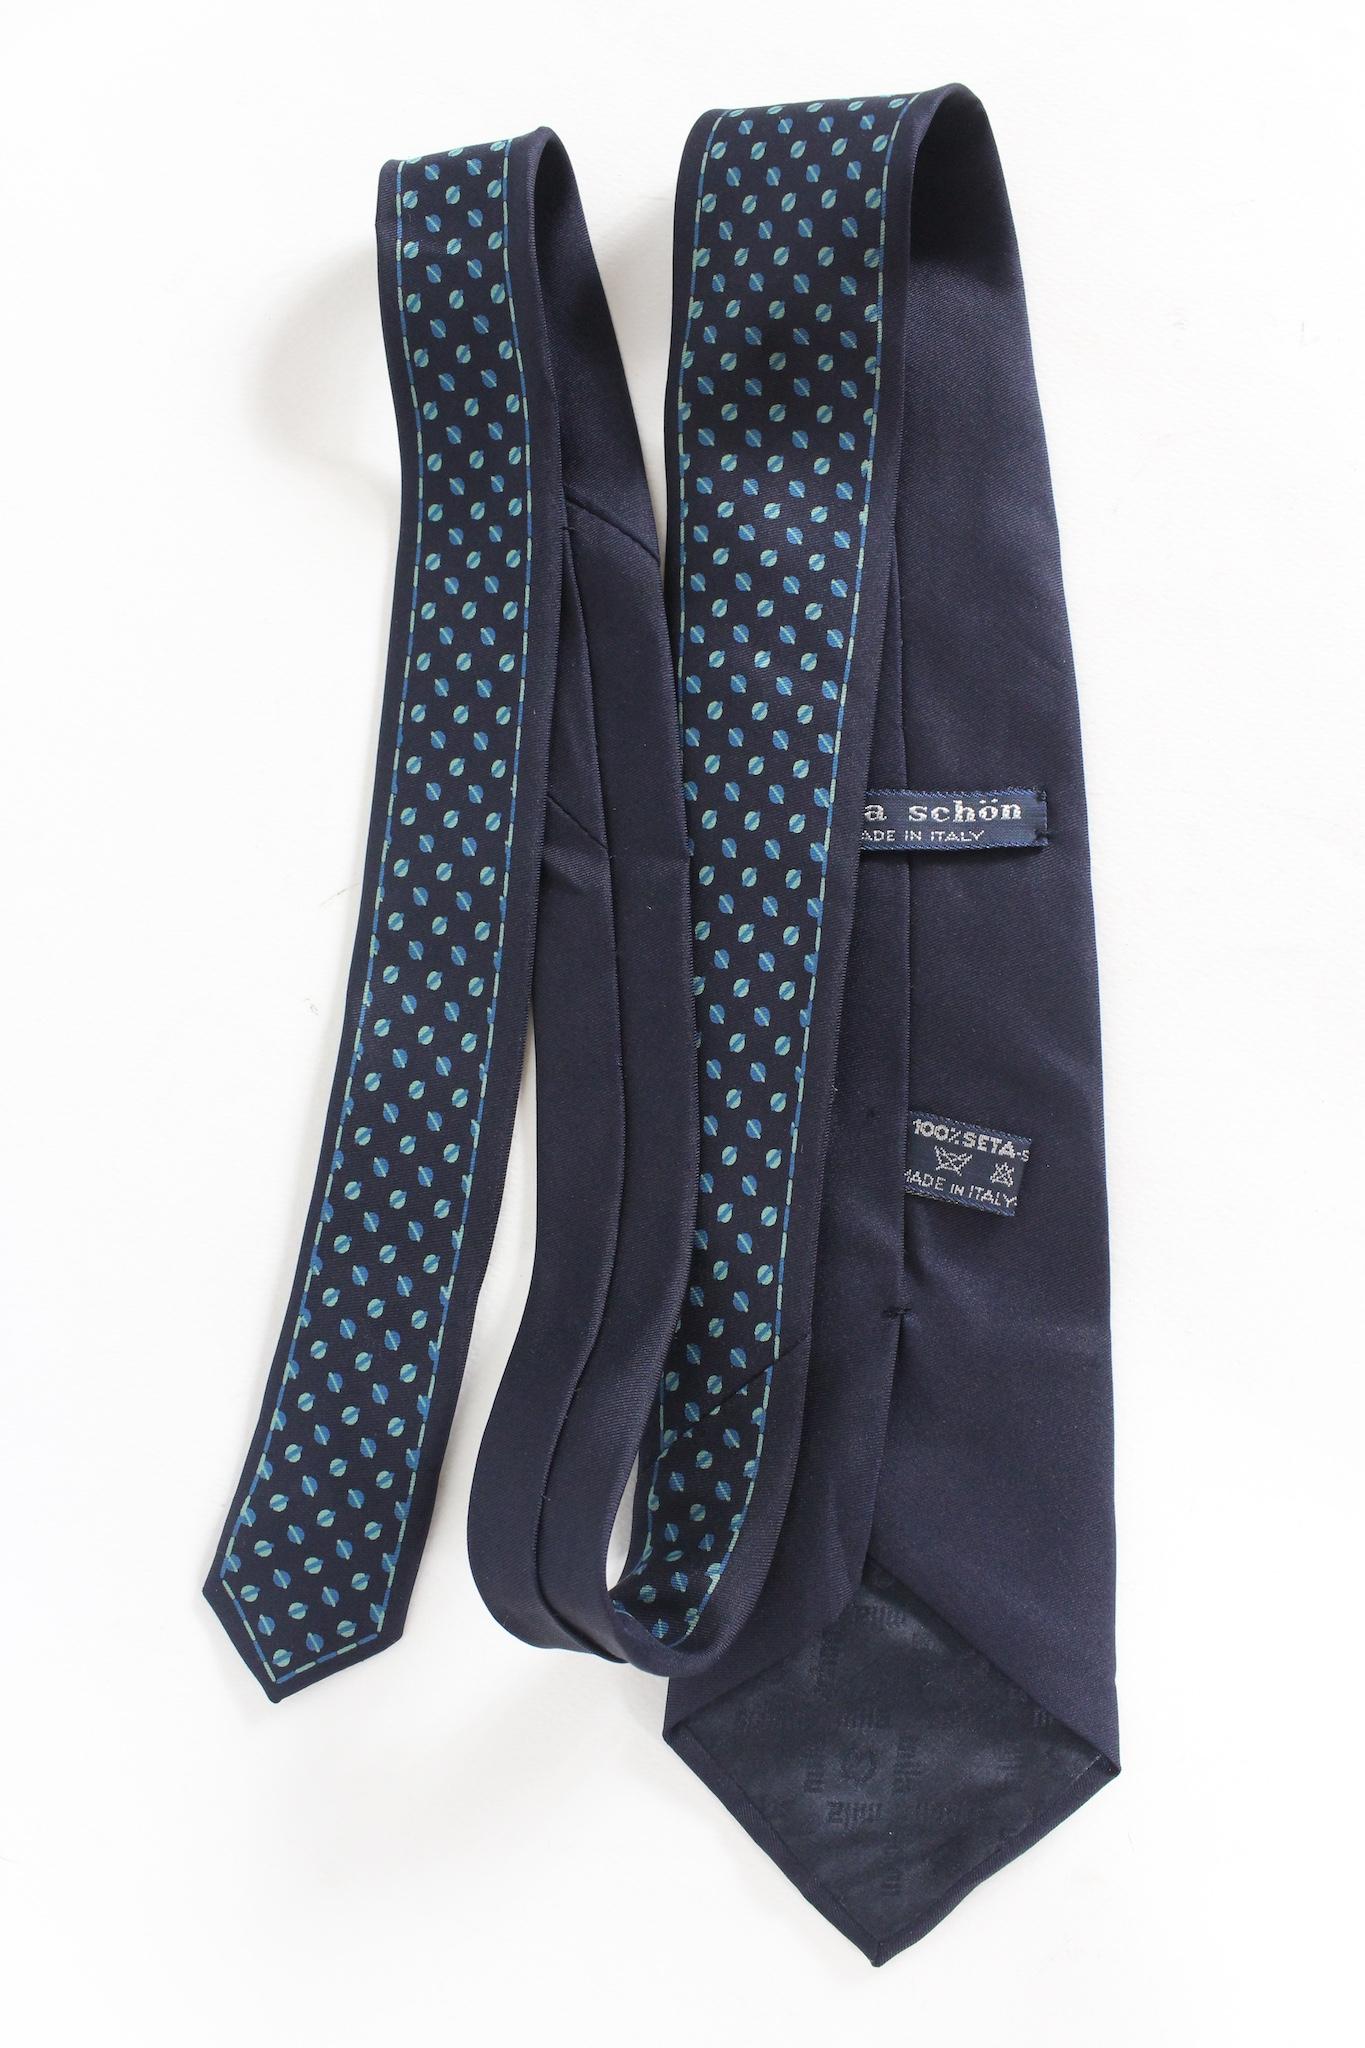 Cravate vintage des années 90 de Mila Schon. Couleur bleue avec des motifs géométriques bleu clair. tissu 100 % soie. Fabriqué en Italie.

Longueur : 138 cm
Largeur : 8.5 cm